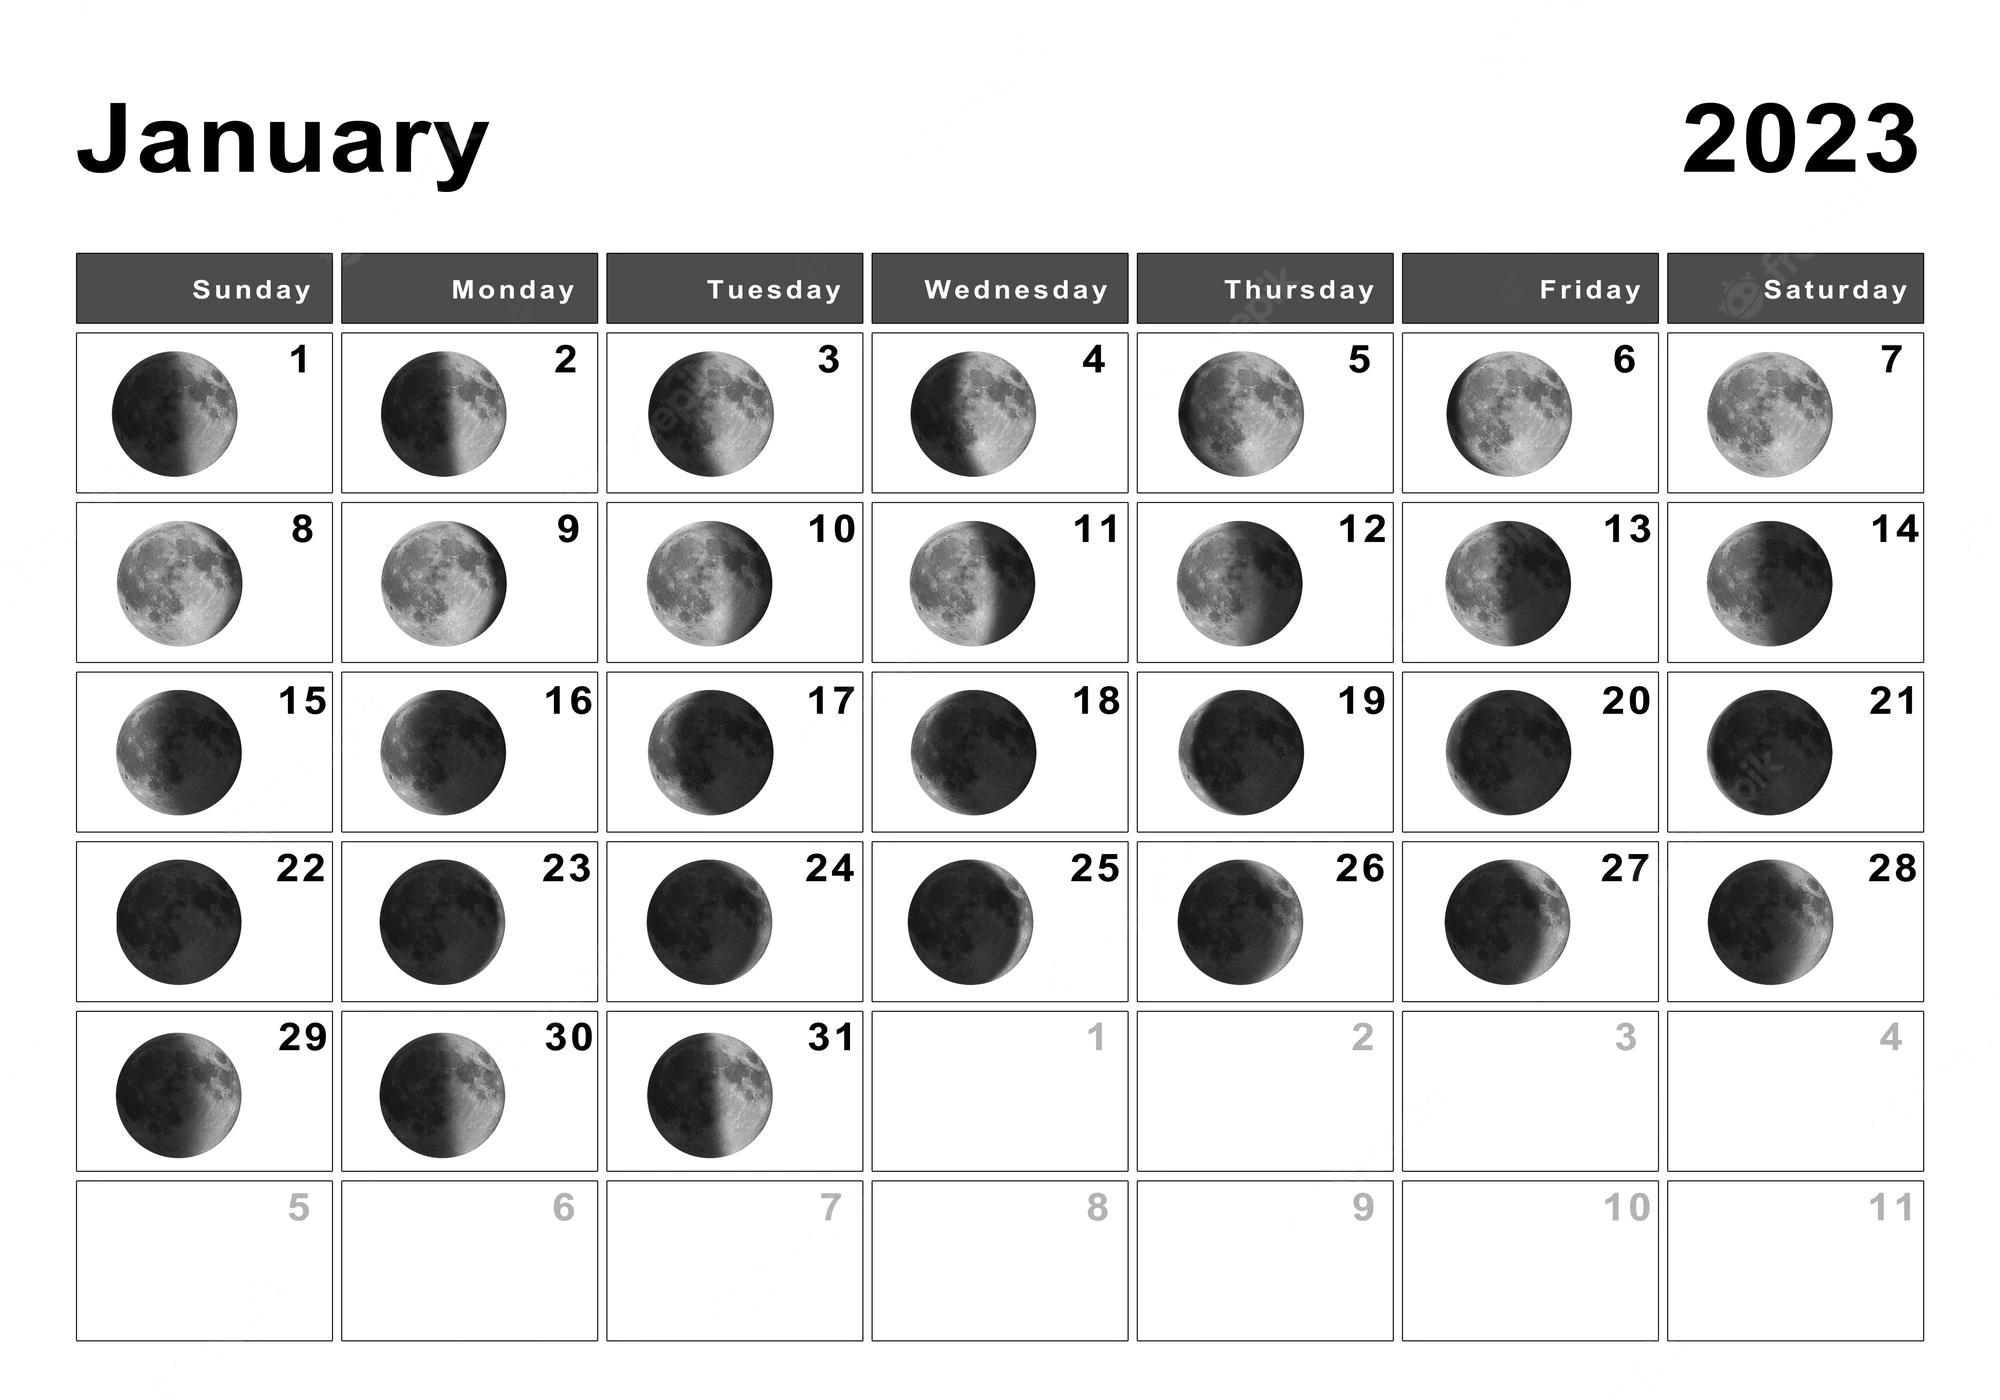 January 2023 Calendar Moon Phases